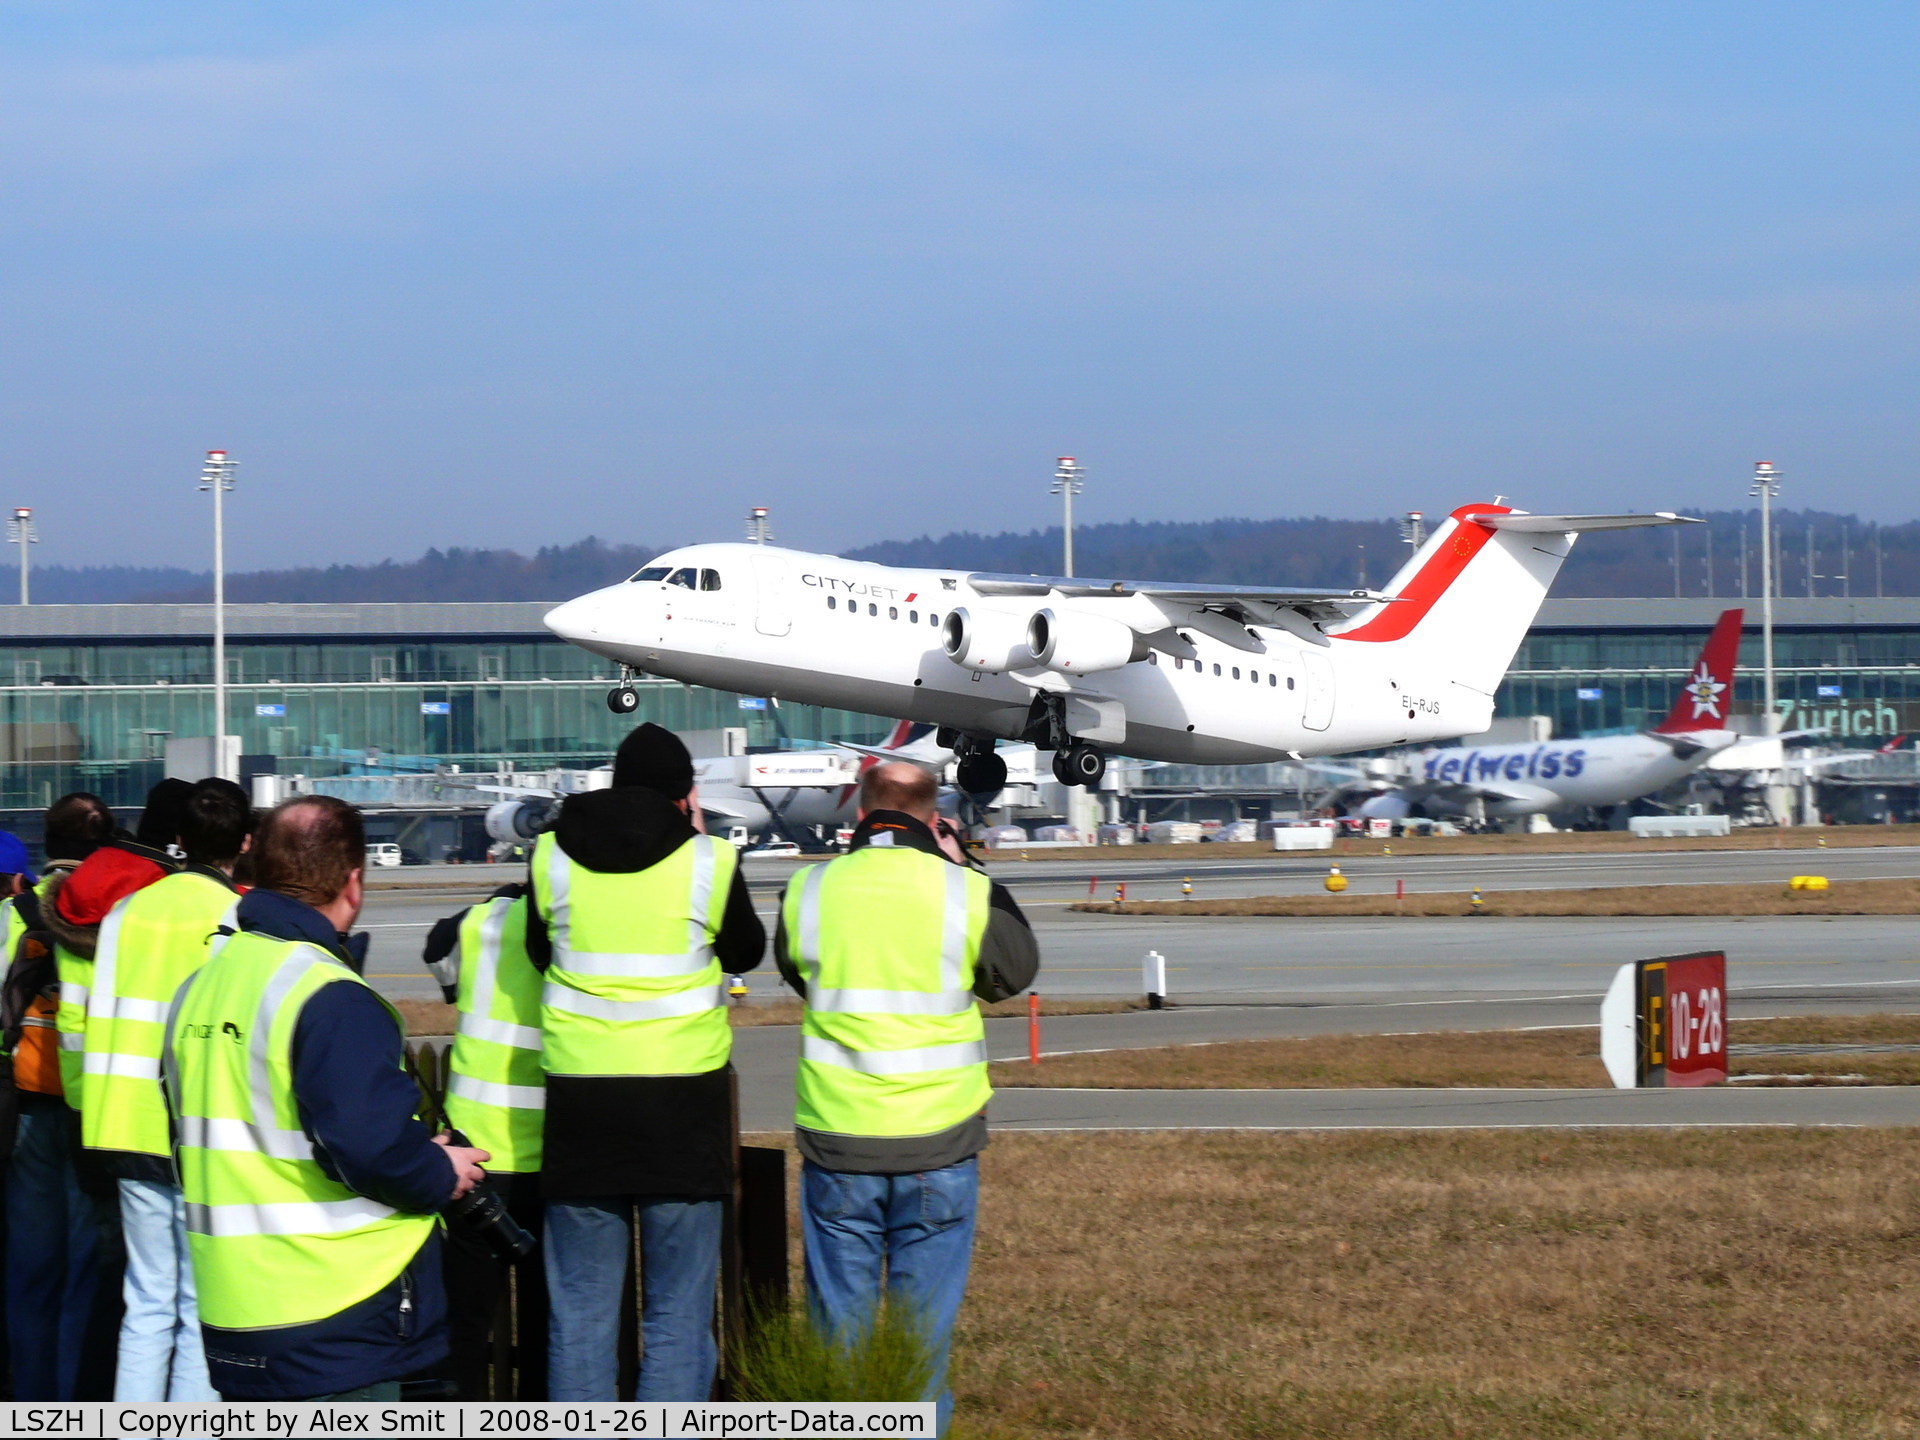 Zurich International Airport, Zurich Switzerland (LSZH) - Taking off in front of the spotters